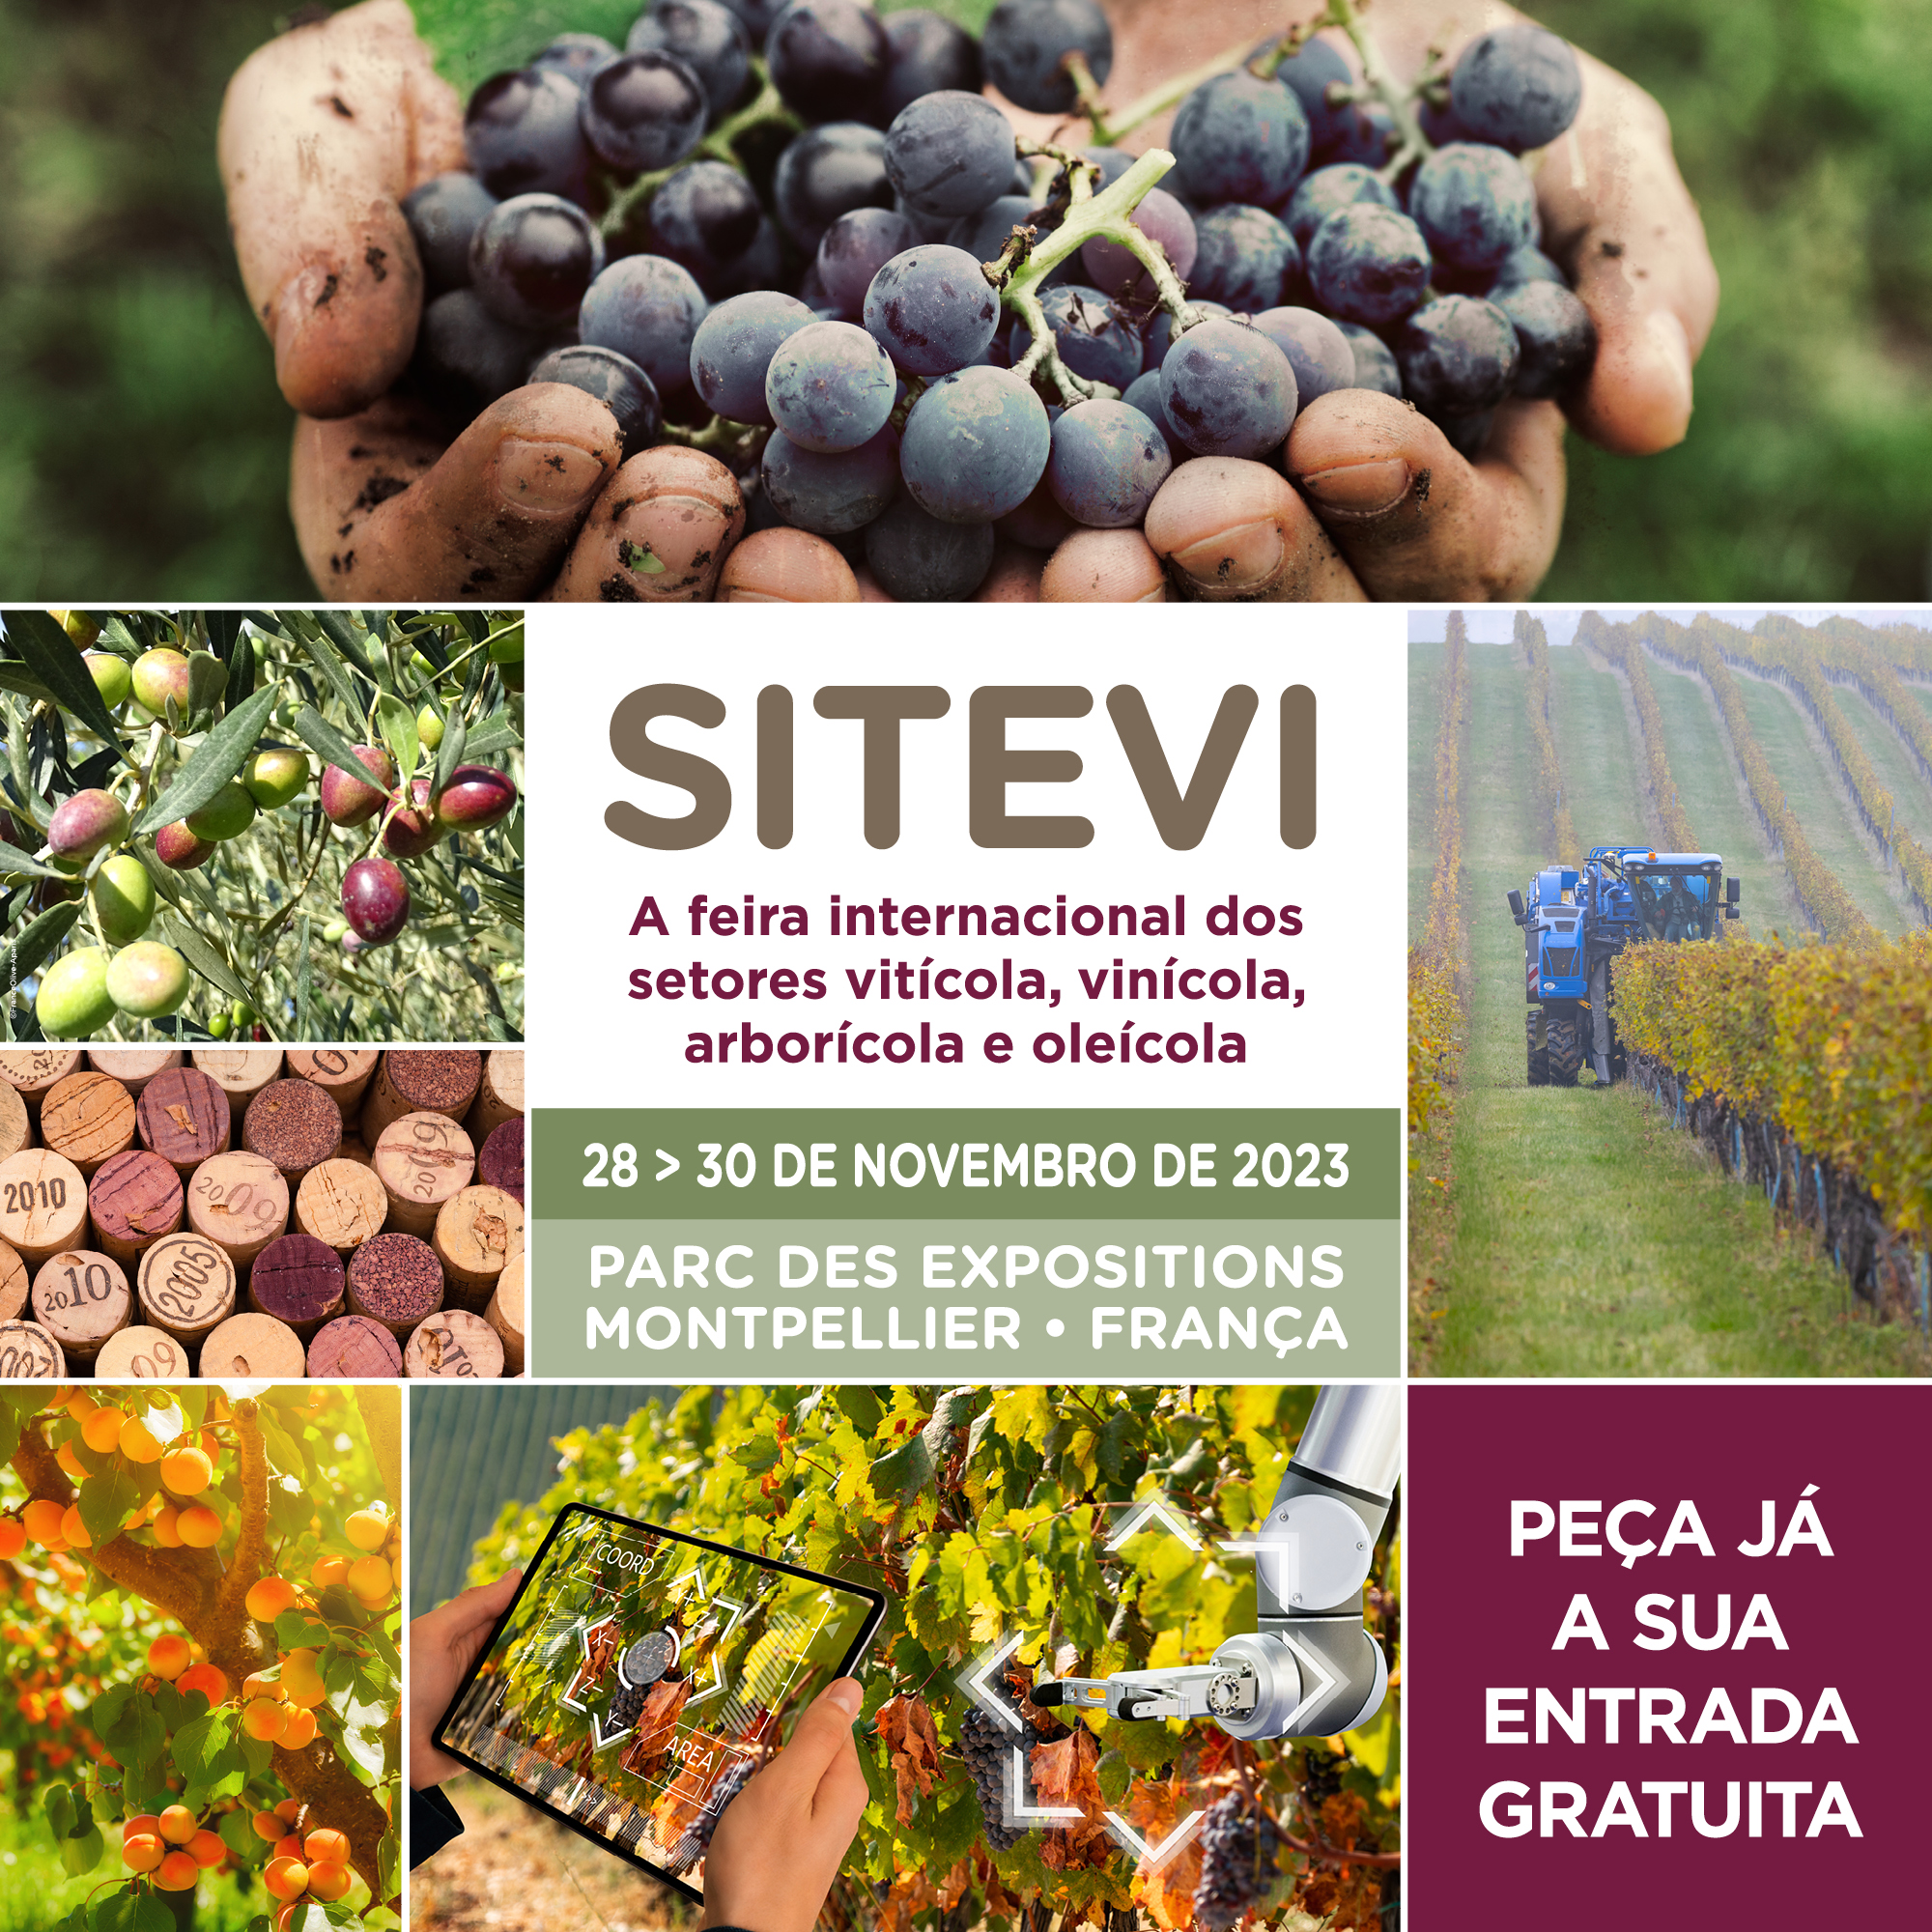 SITEVI, a feira líder nos sectores vitícola, vinícola, arborícola e oleícola (28 a 30 novembro 2023)